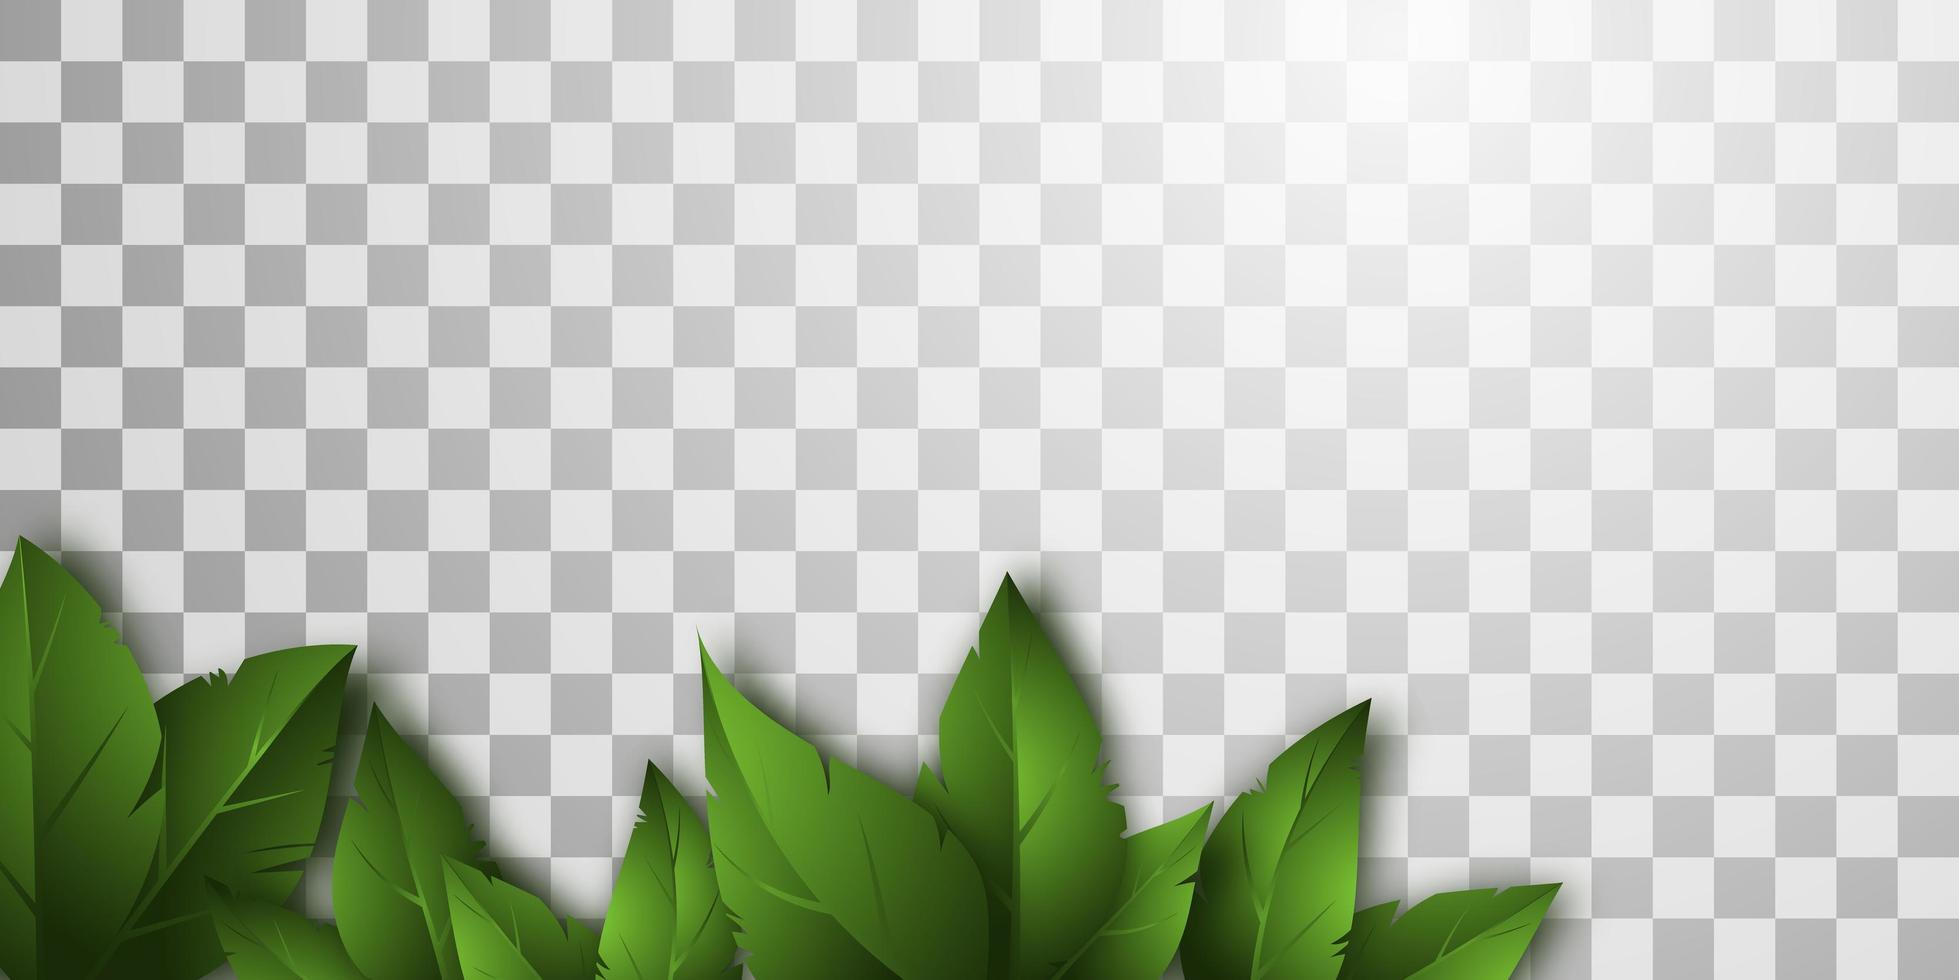 Vektor isolierter Hintergrund mit realistischen grünen Blättern.